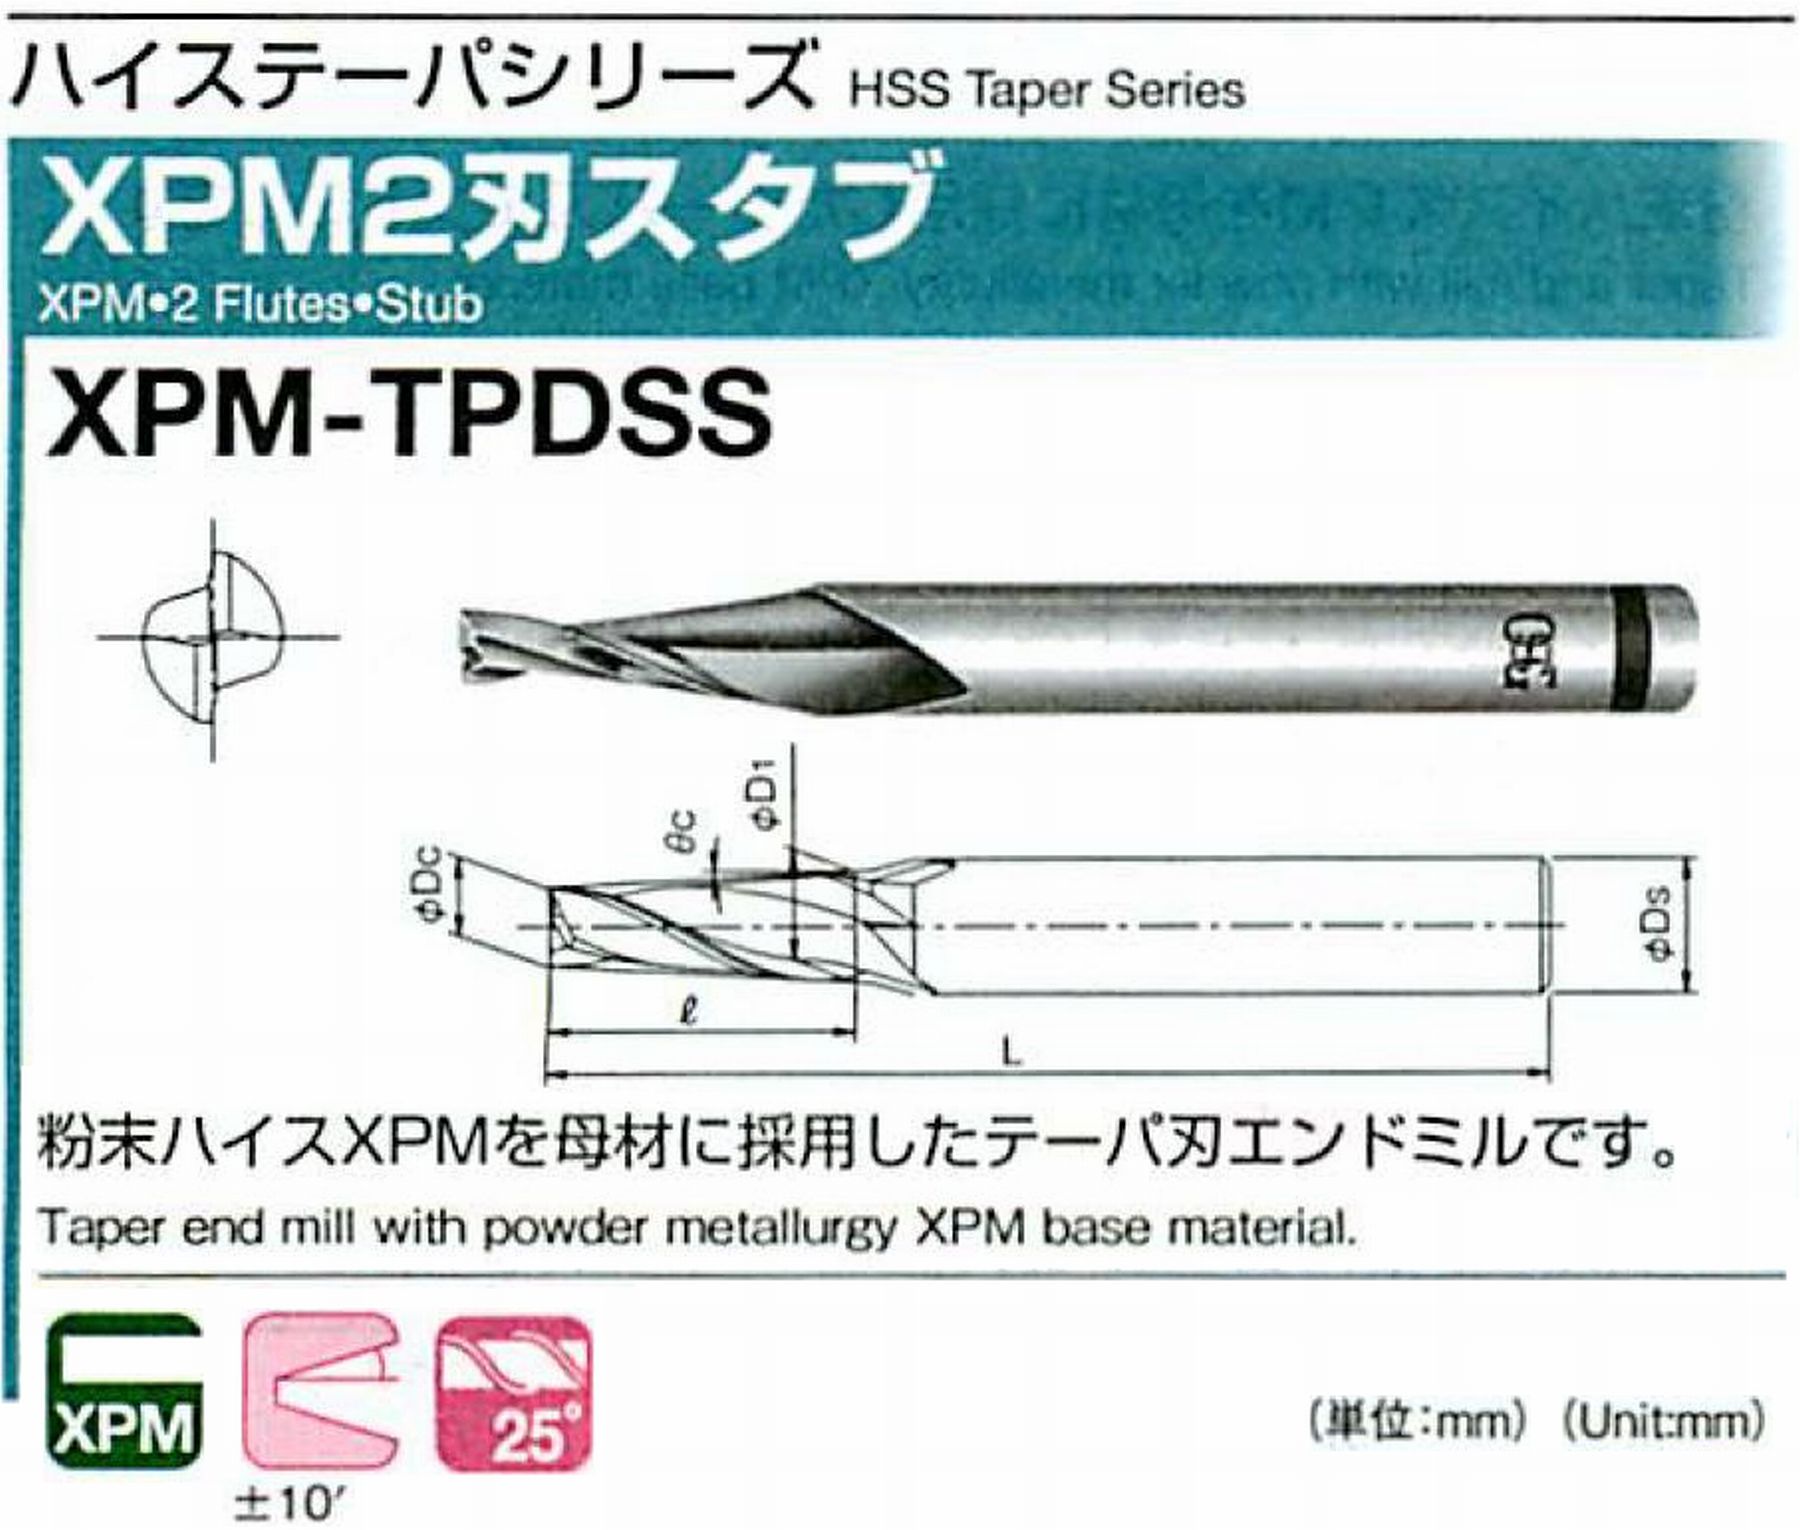 オーエスジー/OSG XPM2刃スタブ XPM-TPDSS 外径×刃部テーパ半角1×0.5° 全長47 刃長2.5 シャンク径6mm 大端径1.04